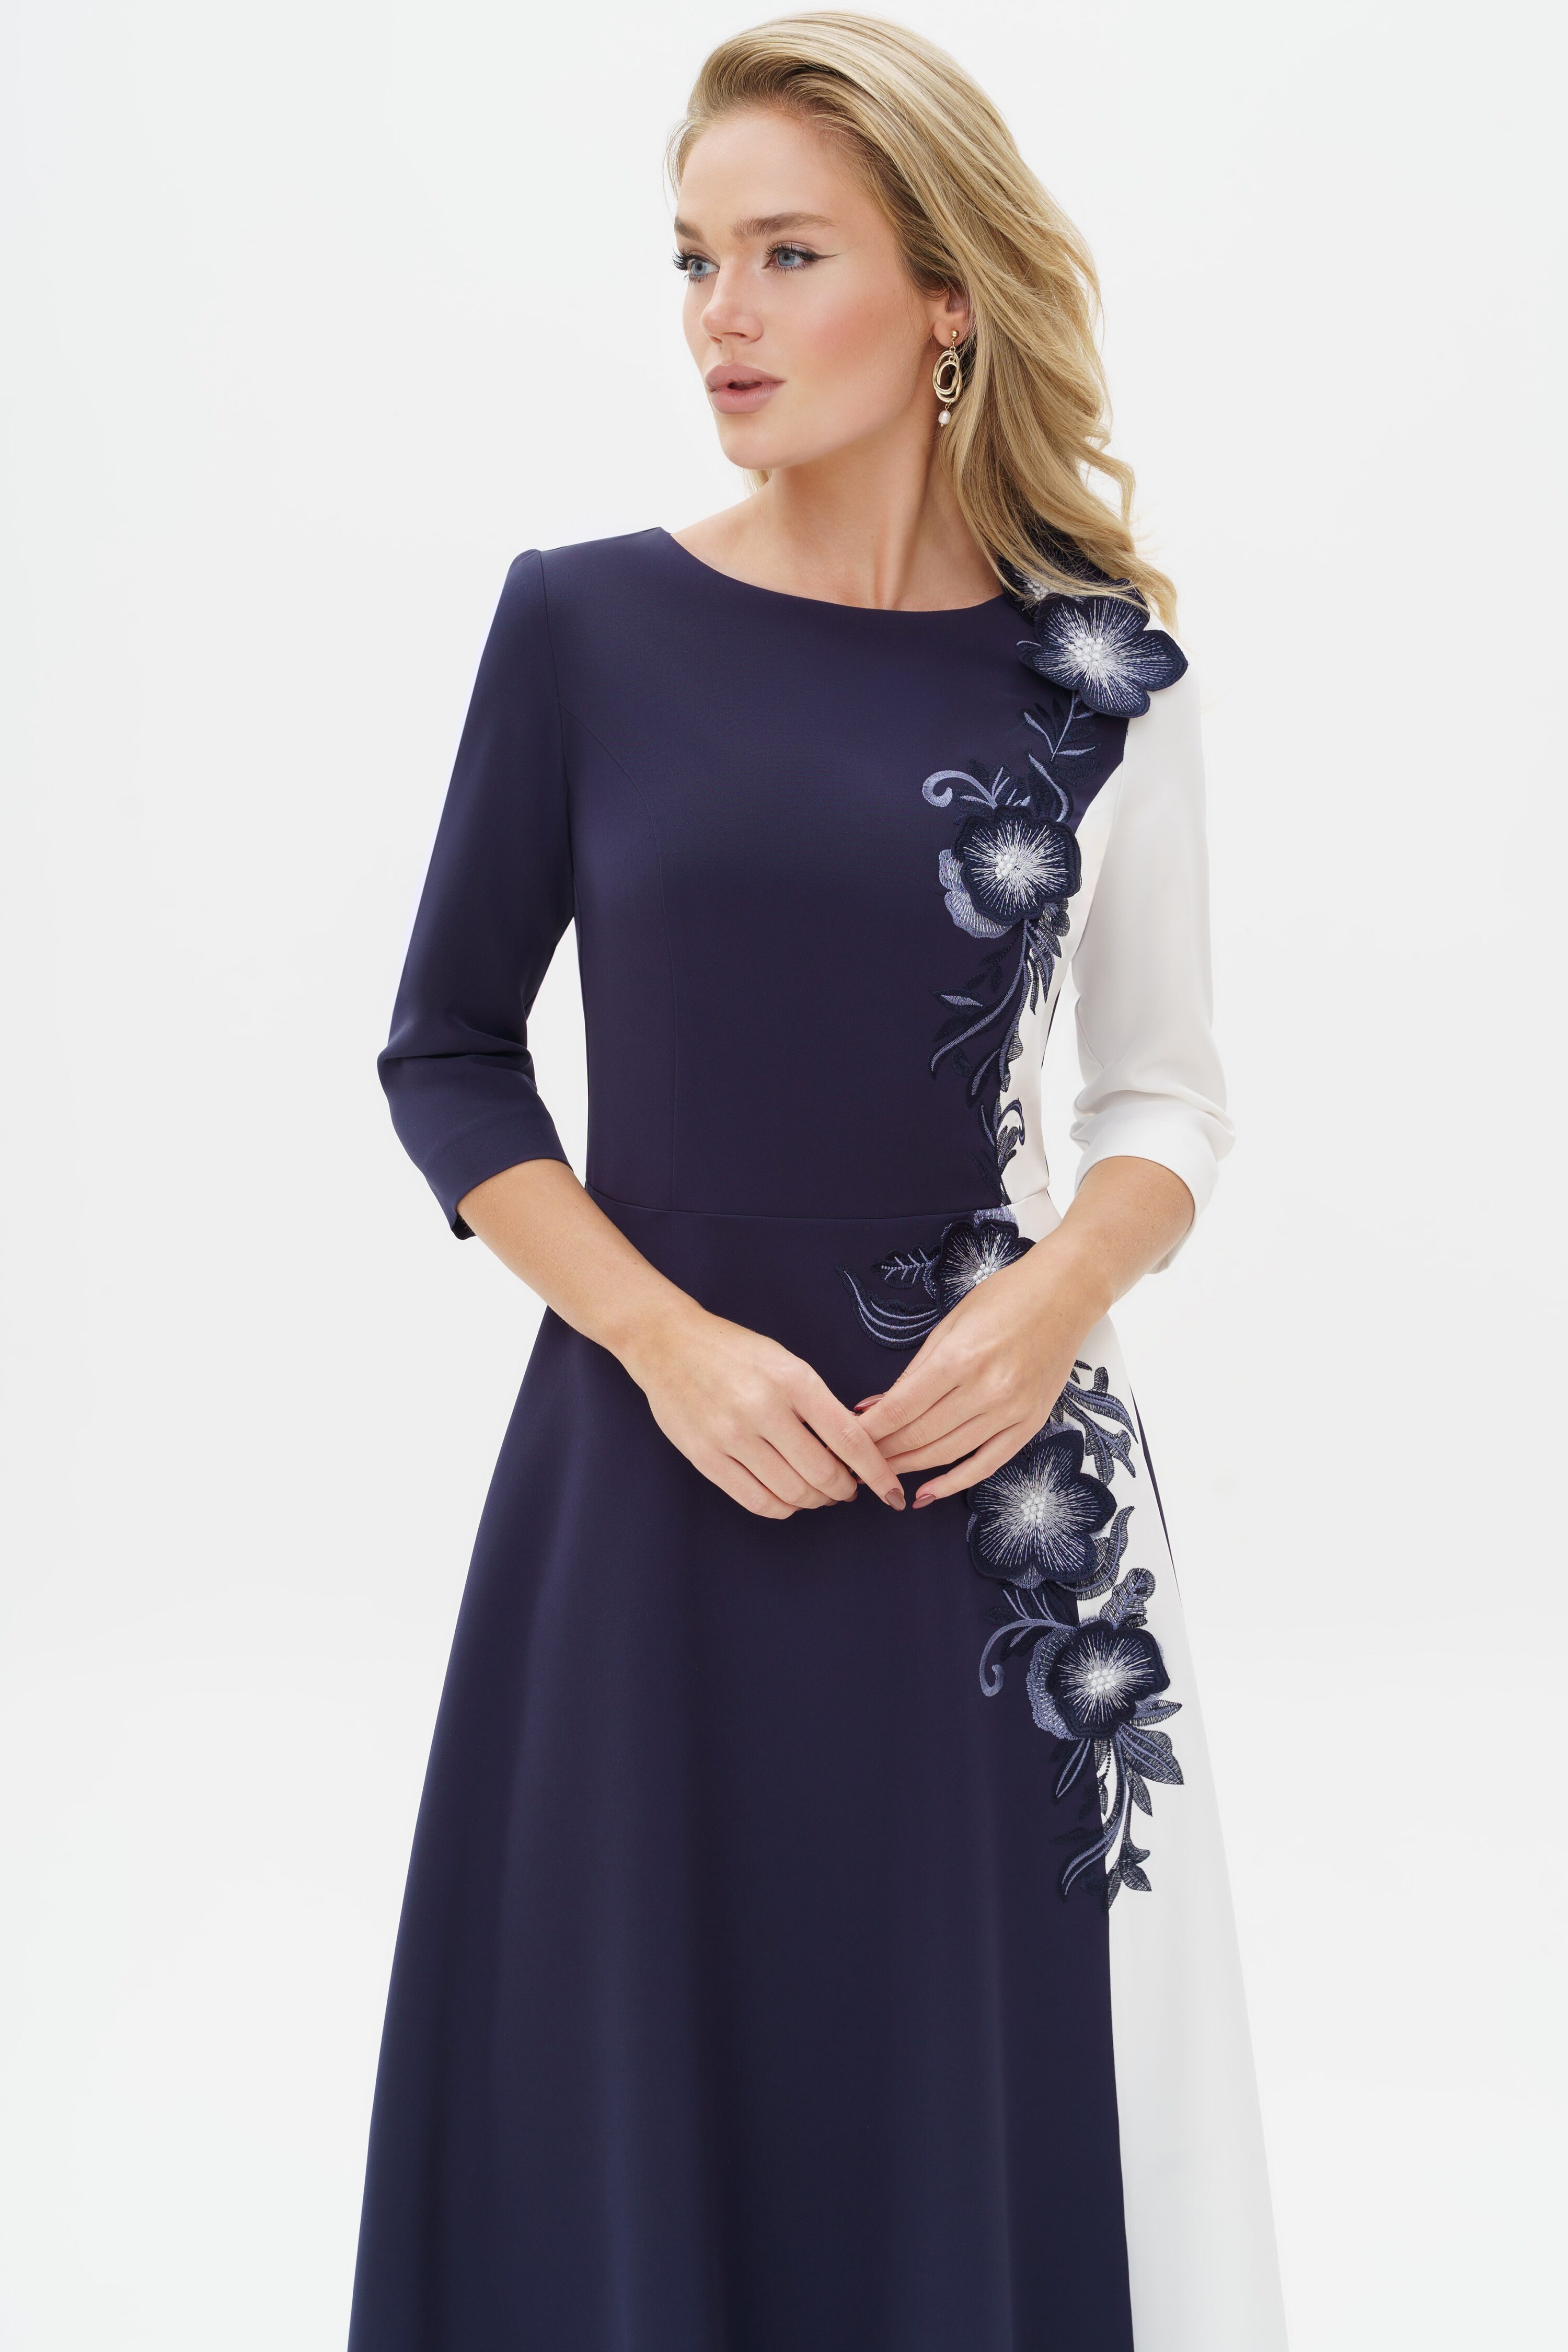 Купить платье URS 24-310-1 синее женское с вышивкой